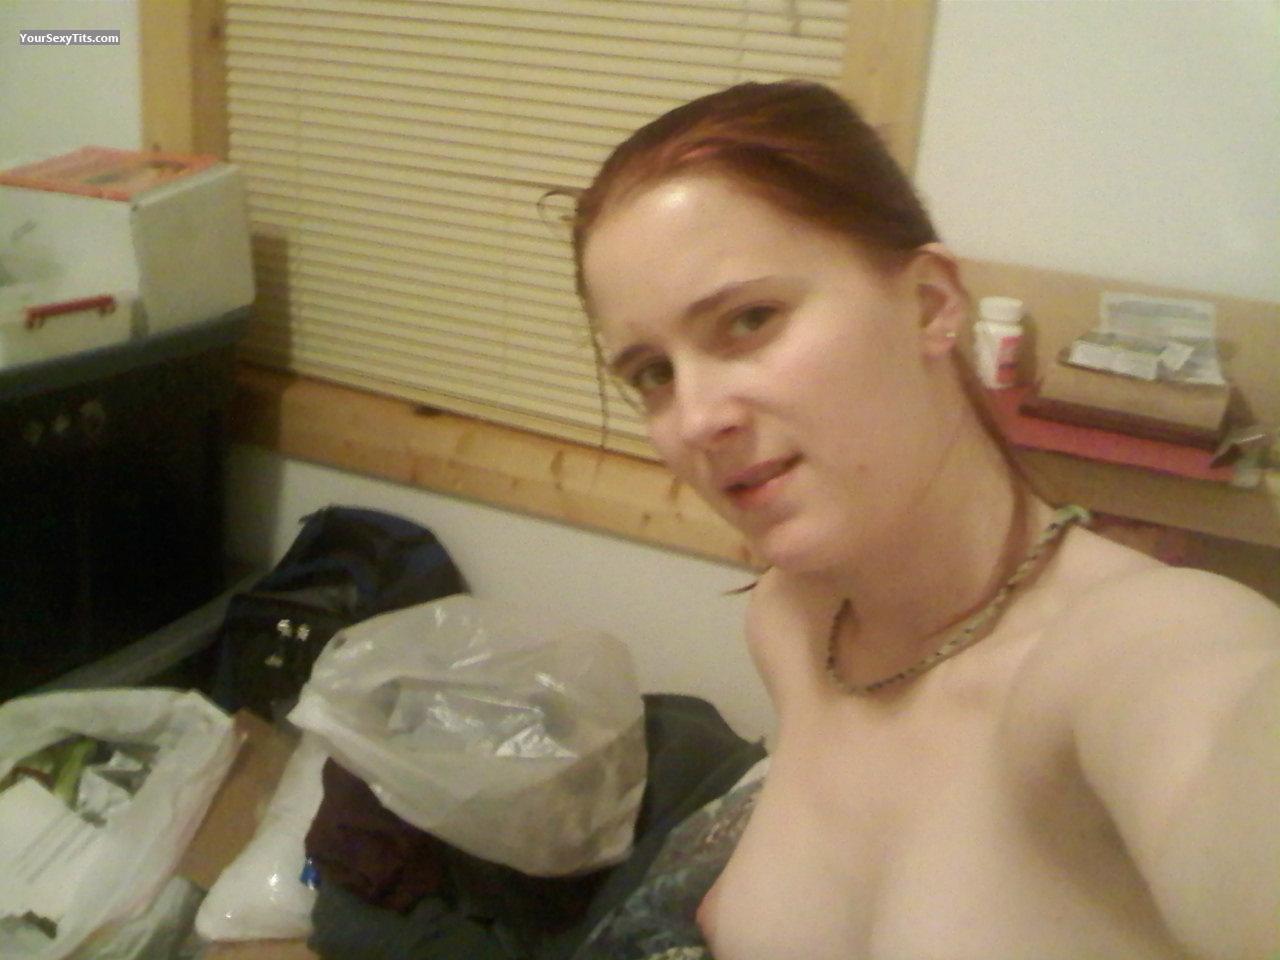 Tit Flash: My Medium Tits (Selfie) - Topless Debra from United States